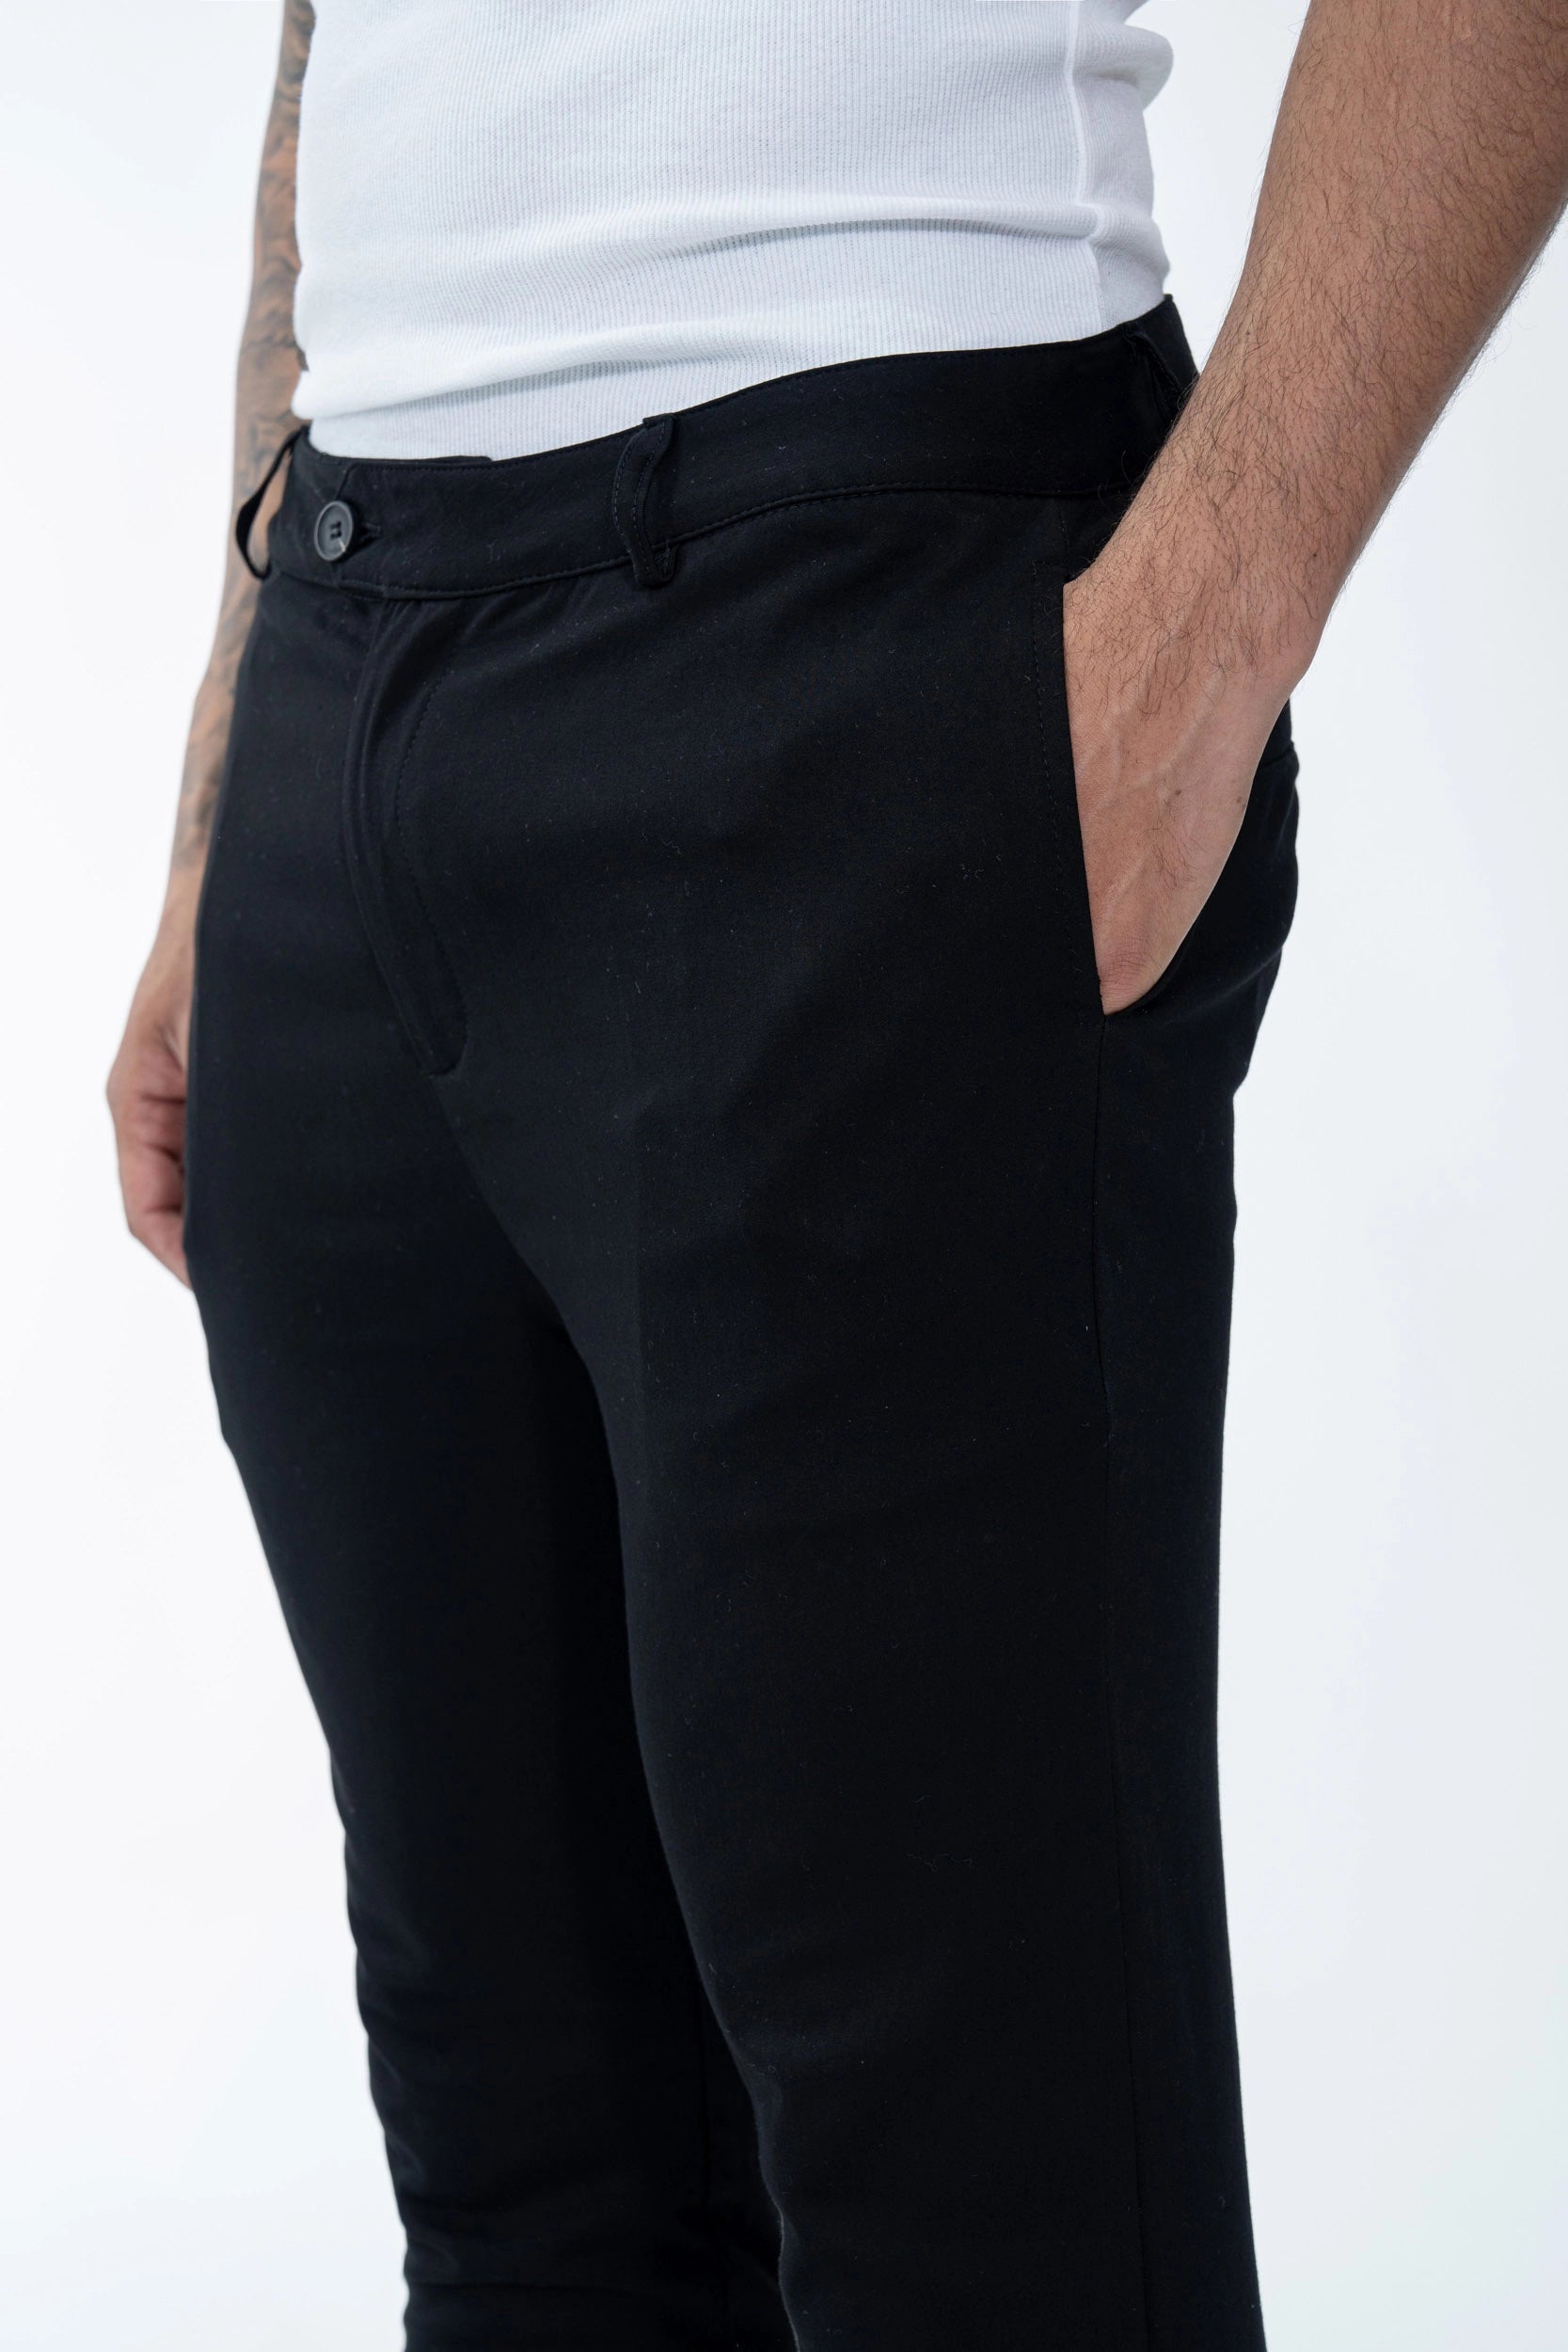 Pantalon uni urbain chic. fermeture zippée et bouton asymétrique